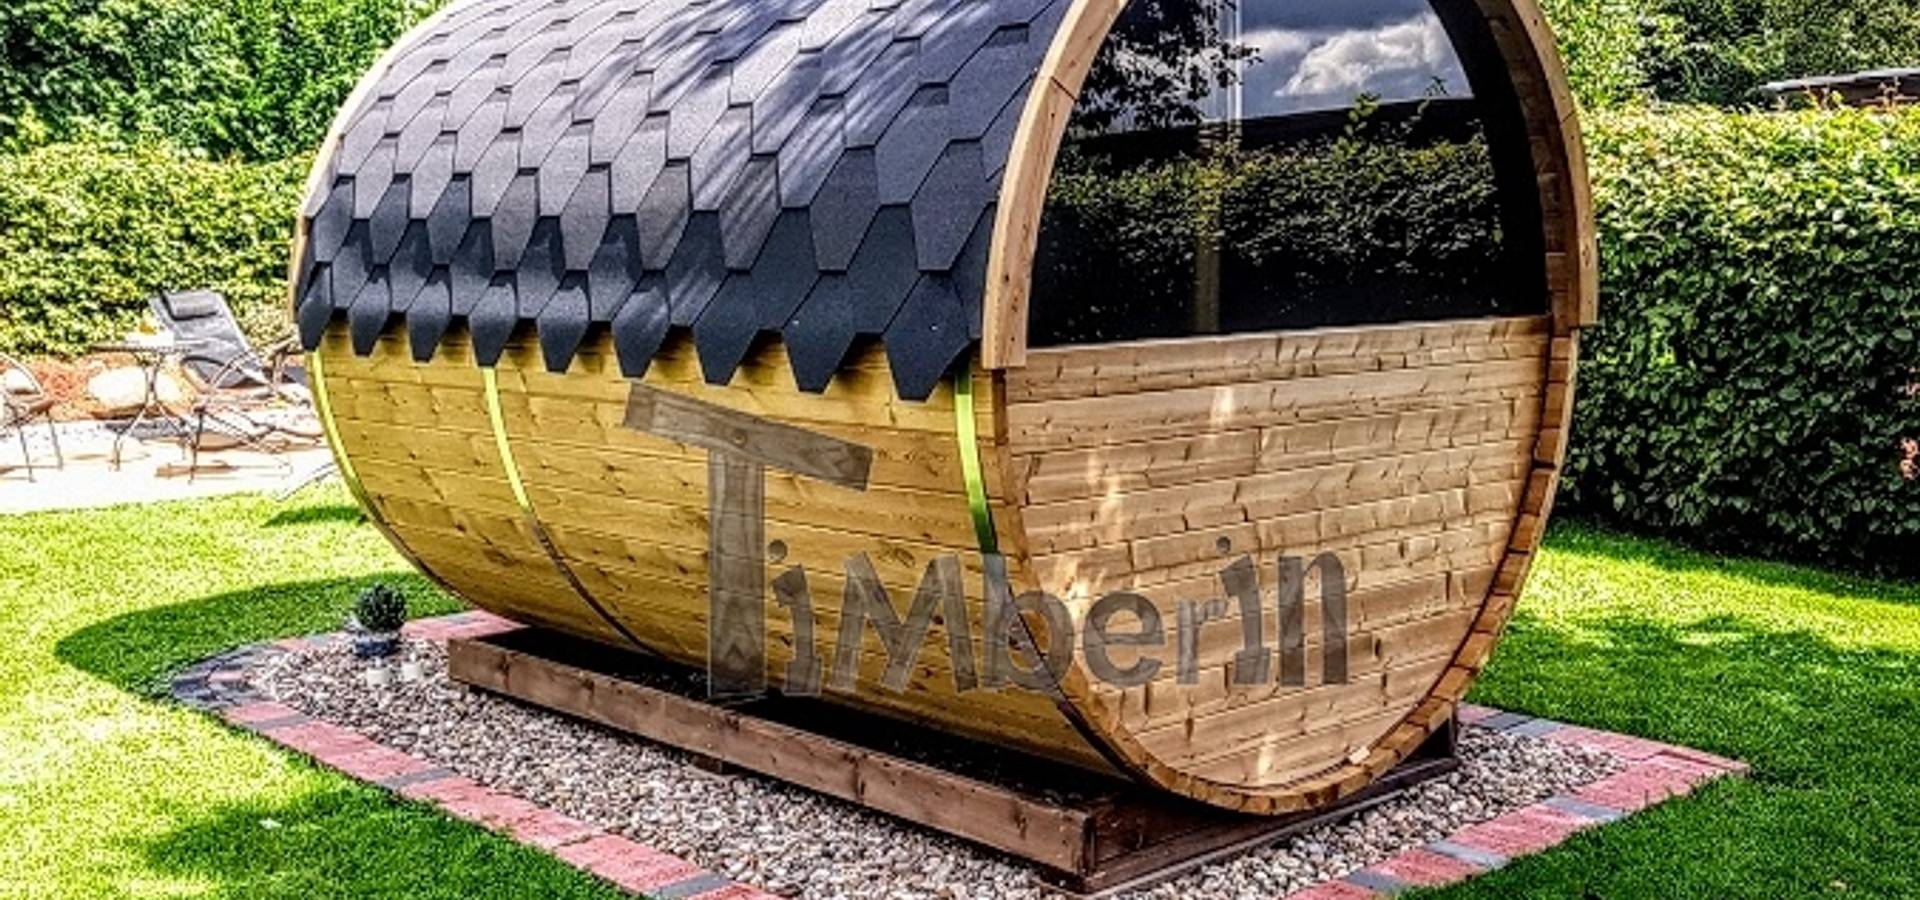 TimberIN hot tubs – outdoor saunas